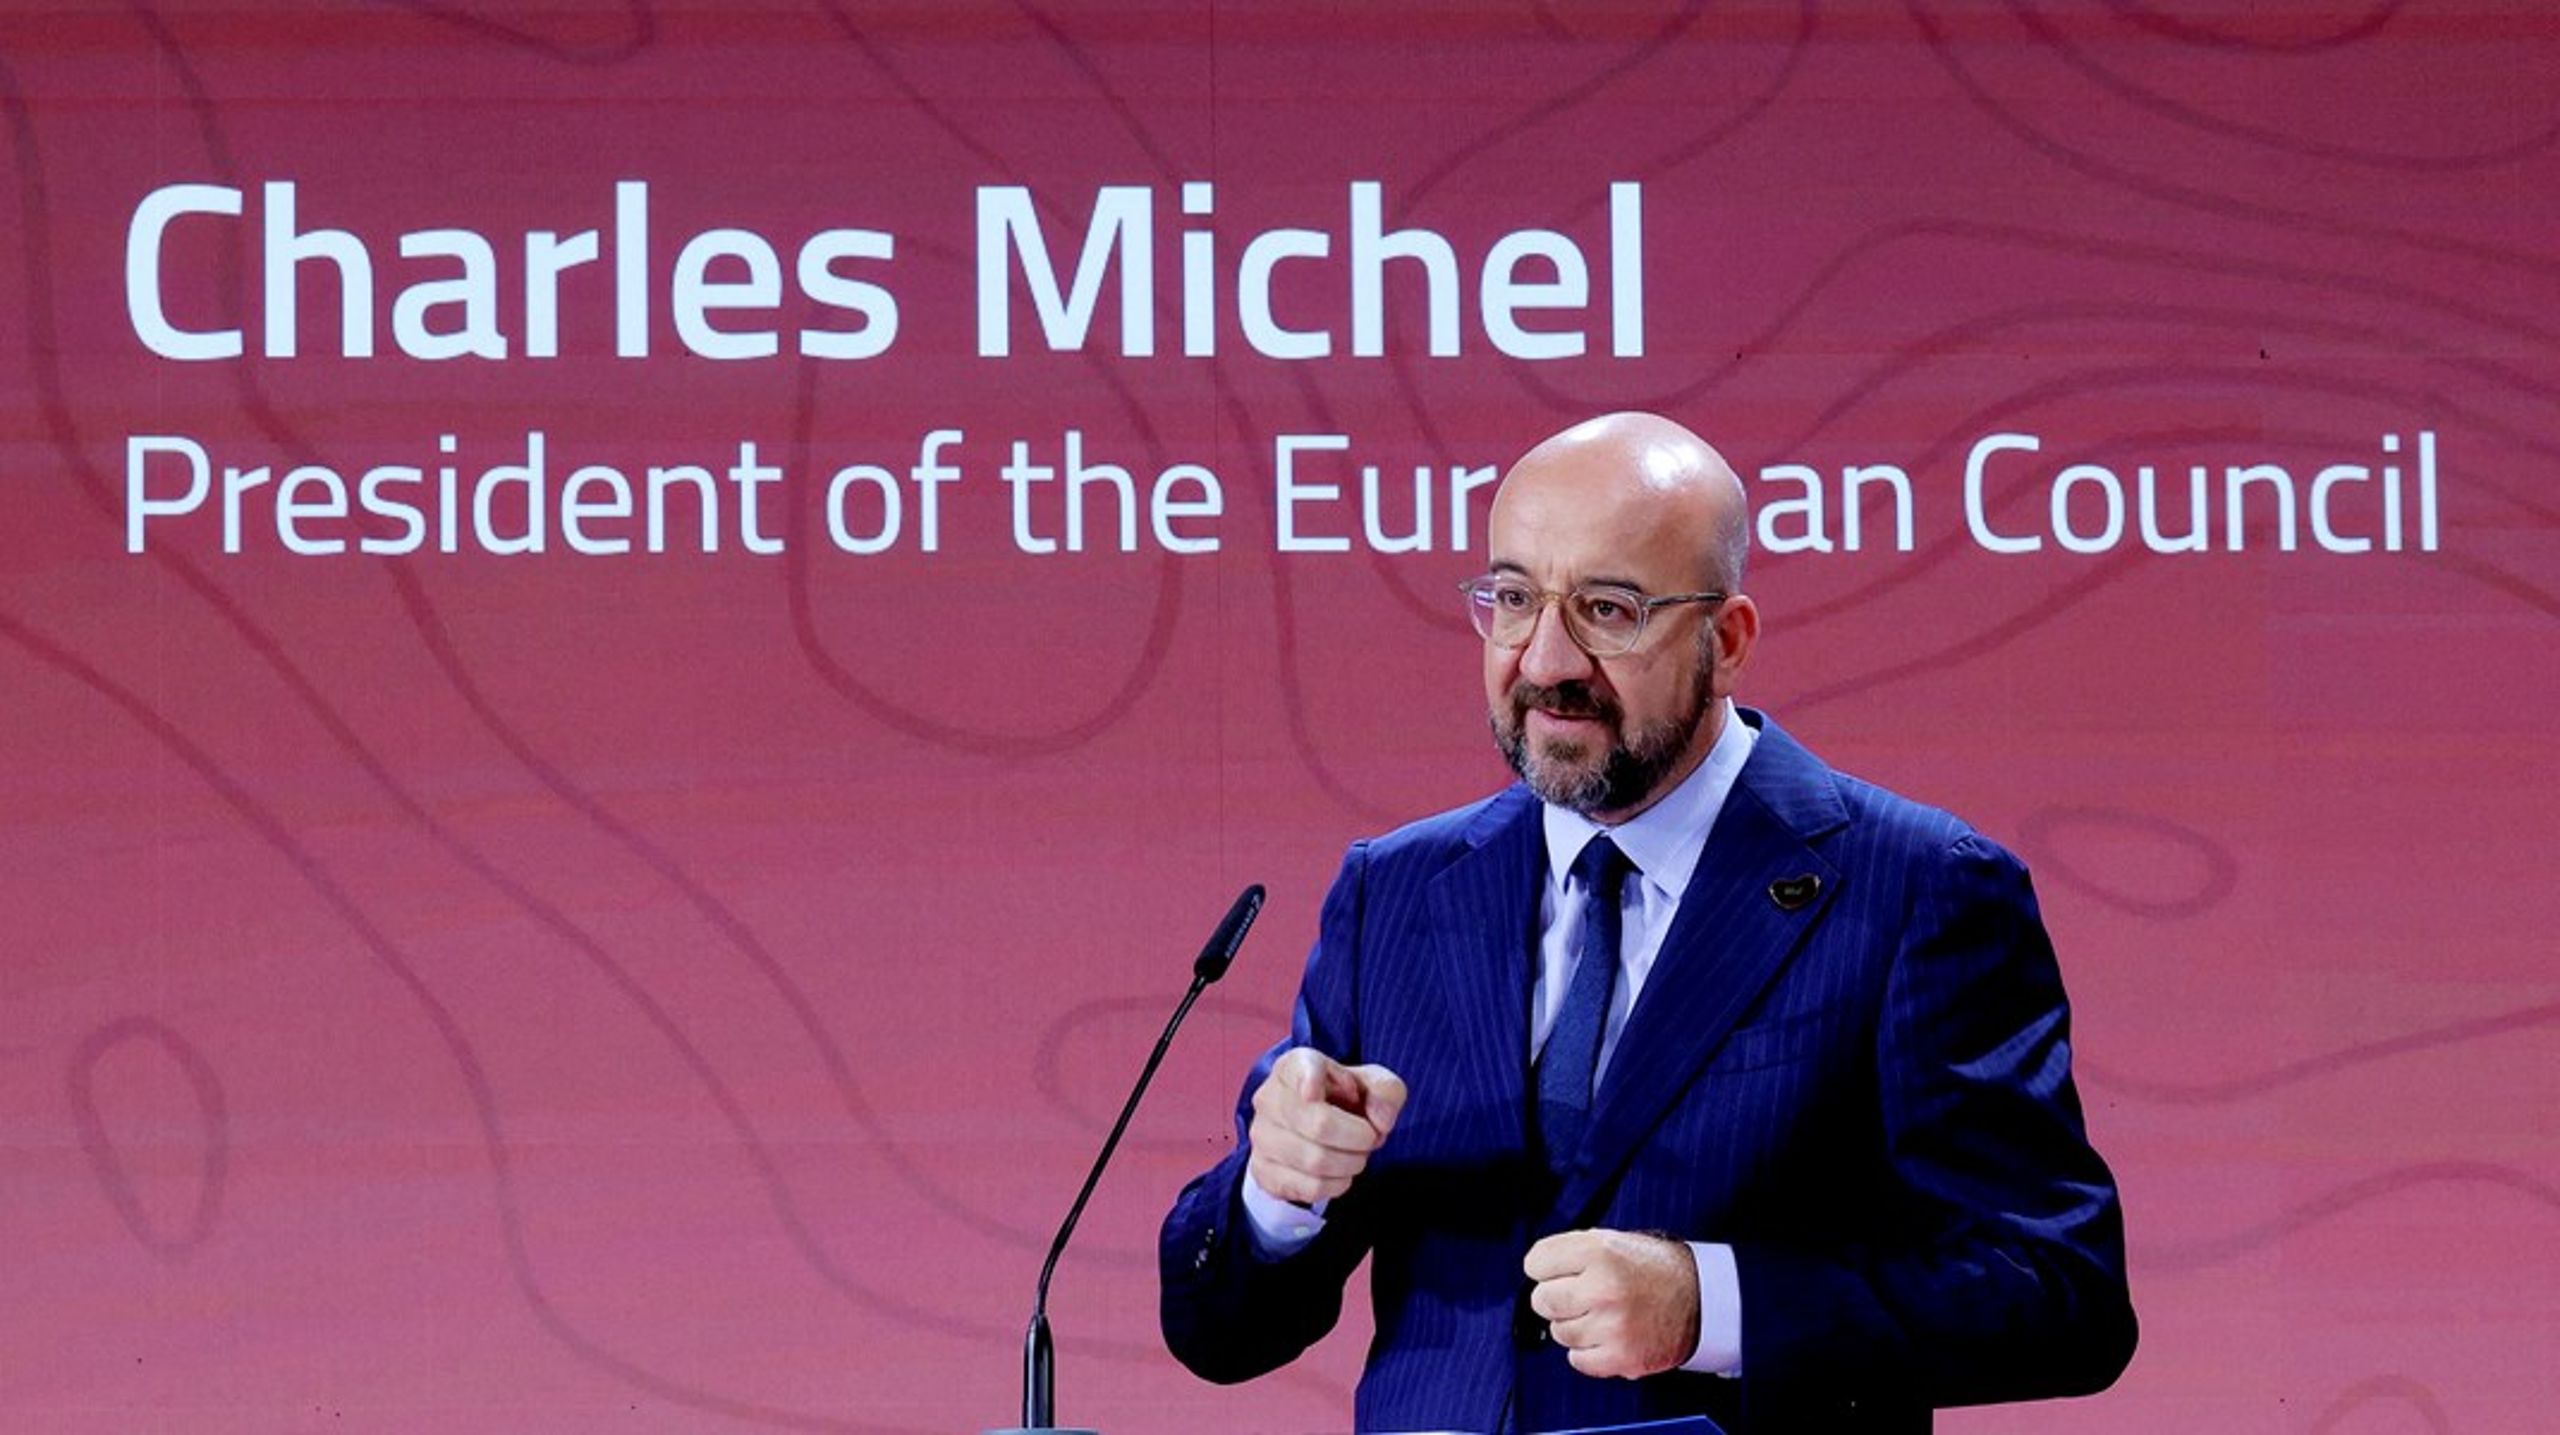 For å øke EUs makt og sikkerhet bør EU være klar for enda en østlig ekspansjon i 2030. Slik lød det fra rådsformann Charles Michel mandag.